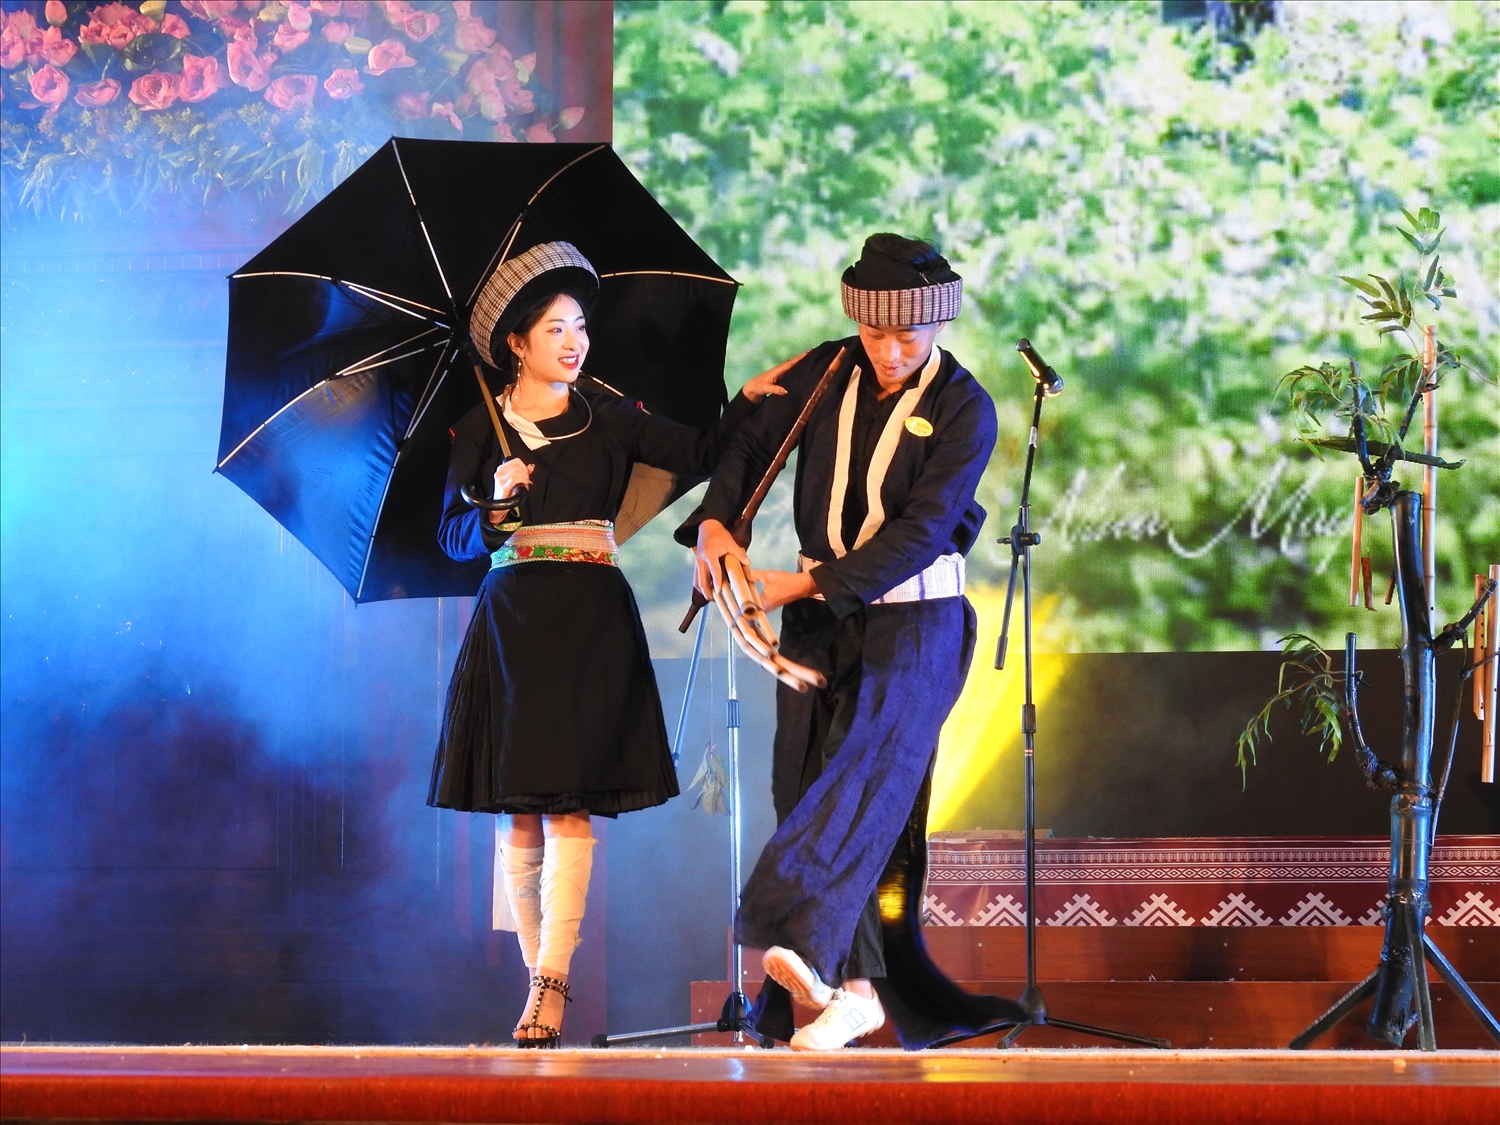 Mông xanh là nhóm ngành duy nhất có ở Việt Nam, sinh sống chủ yếu ở xã Nậm Xé, huyện Văn Bàn. Trang phục Mông xanh làm từ chất liệu vải lanh nhuộm chàm đen chủ đạo, hoa văn nền với nhiều họa tiết thêu bằng chỉ trắng, tím, xanh độc đáo, khác biệt với nhóm ngành Mông khác